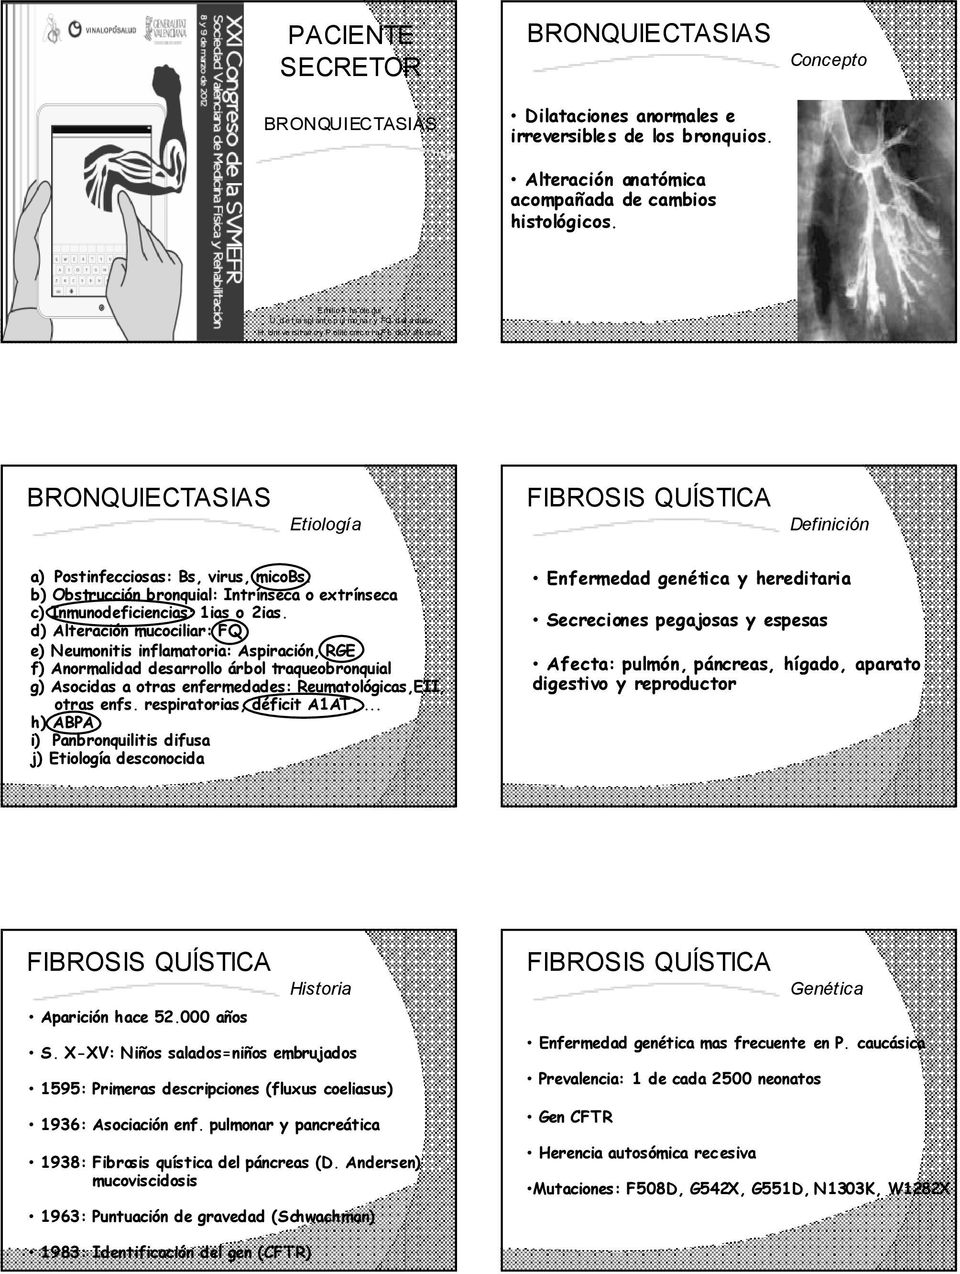 b) Obstrucción bronquial: Intrínseca o extrínseca c) Inmunodeficiencias: 1ias o 2ias.